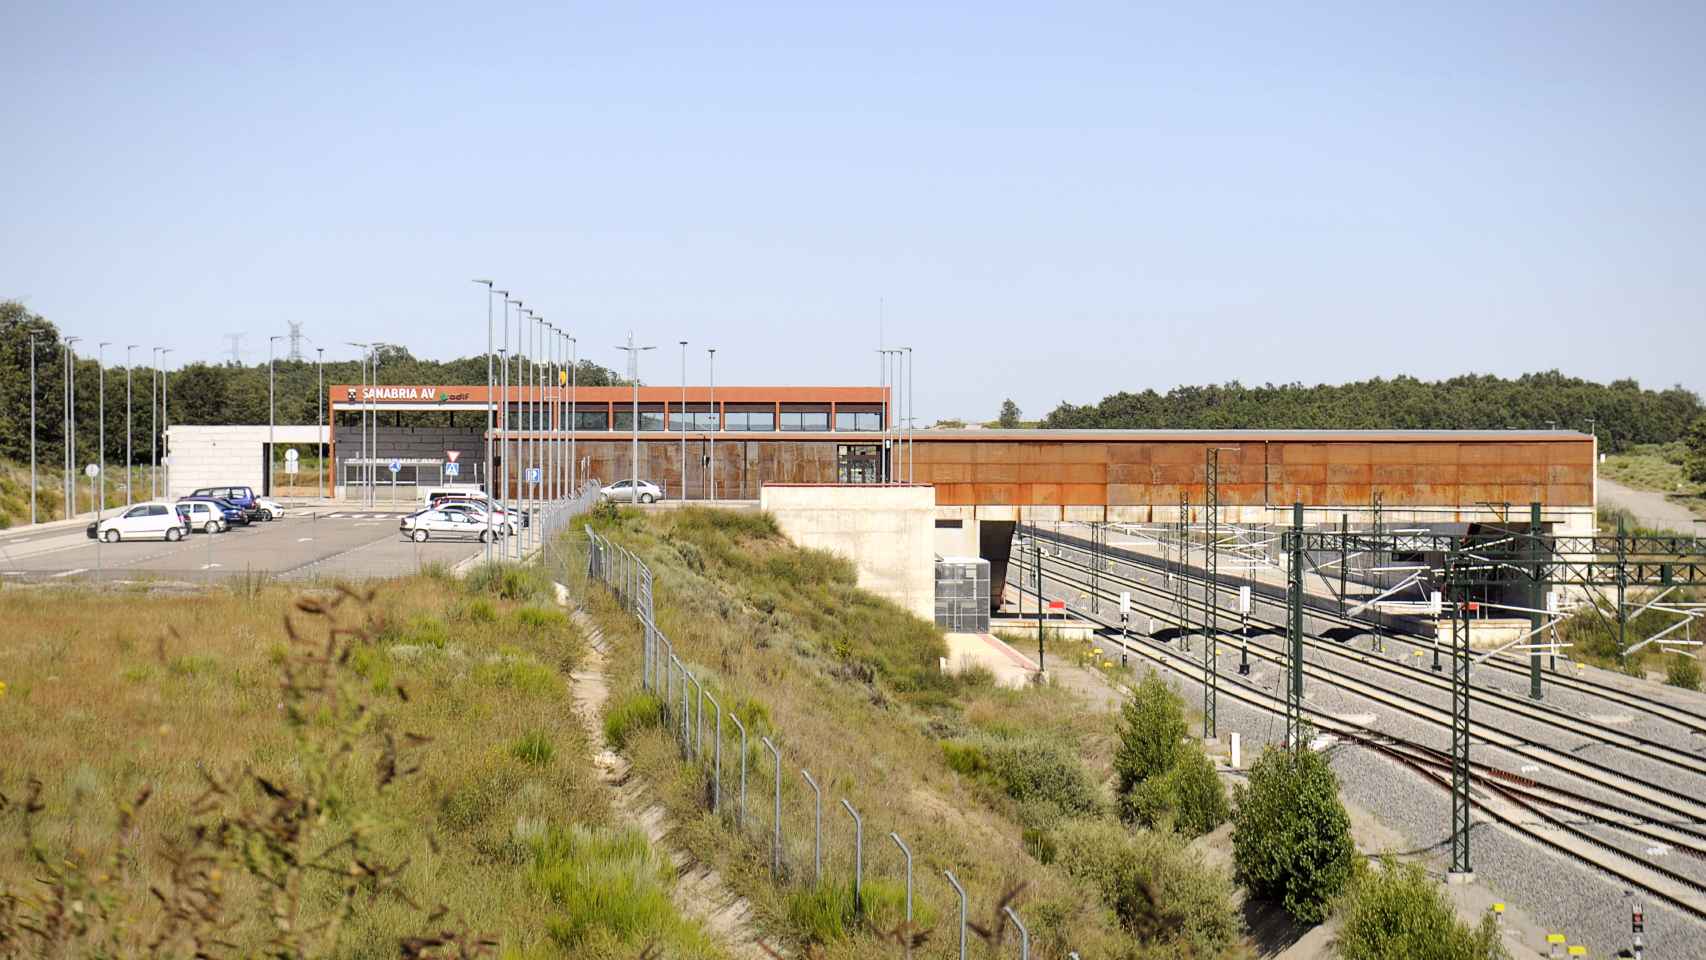 La estación Sanabria AV vista desde la carretera.